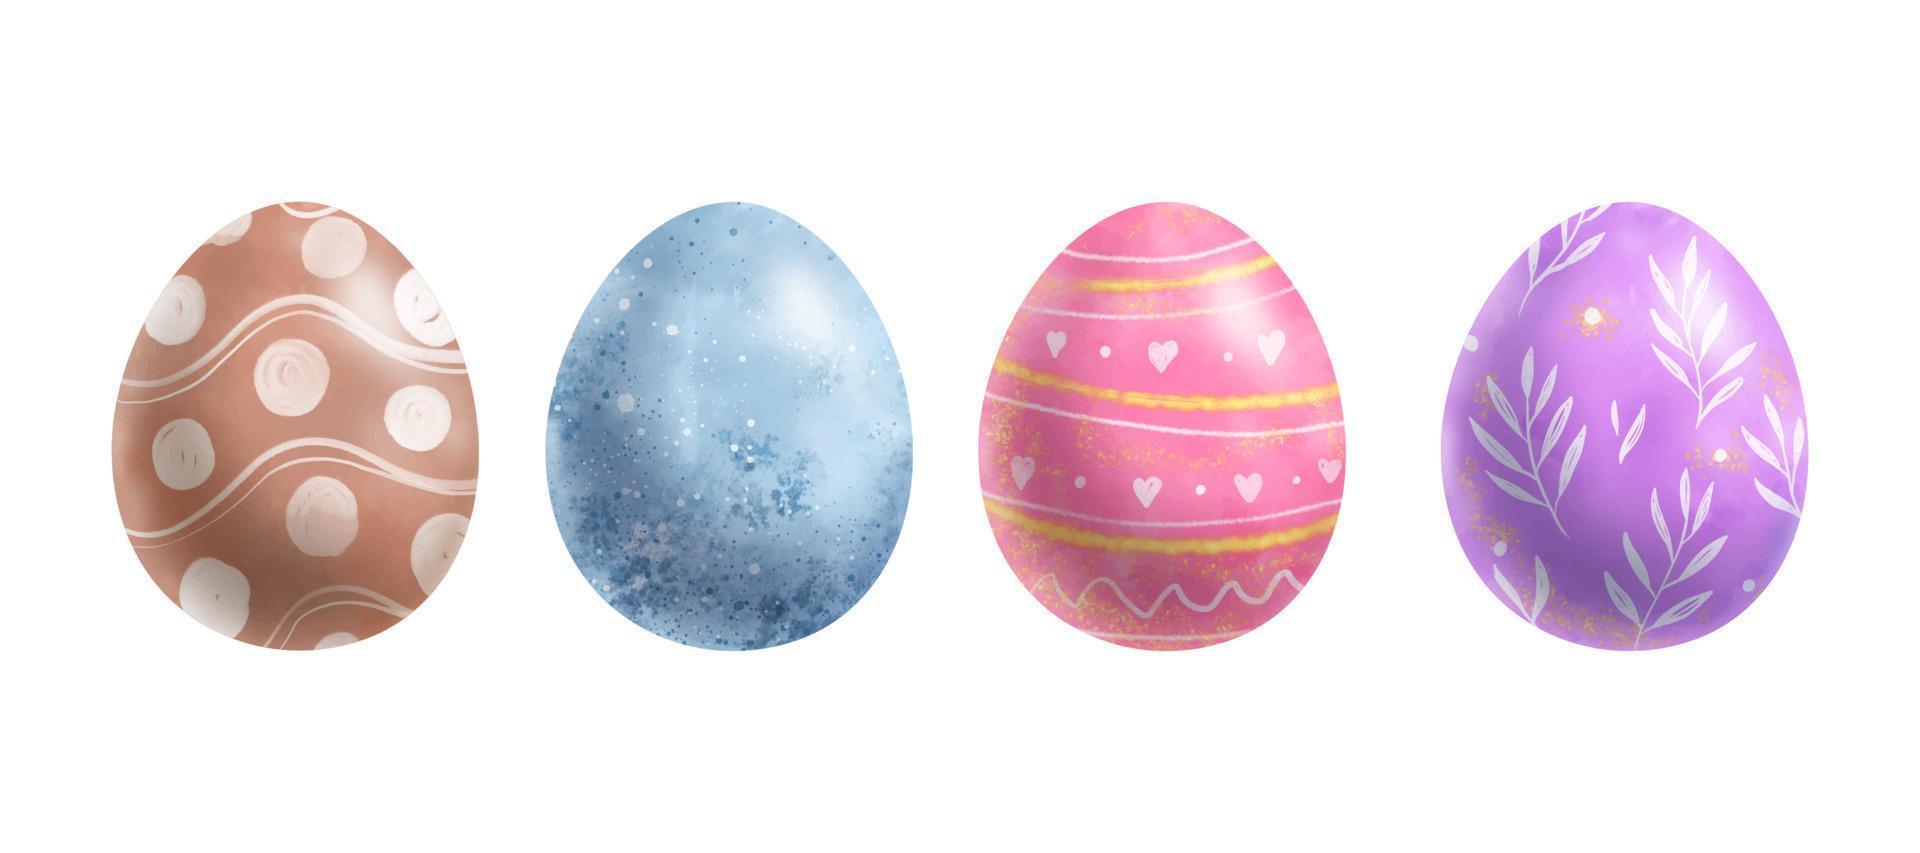 uova di Pasqua. set di illustrazioni di disegno a mano di uova colorate in stile acquerello. vettore di elementi decorativi